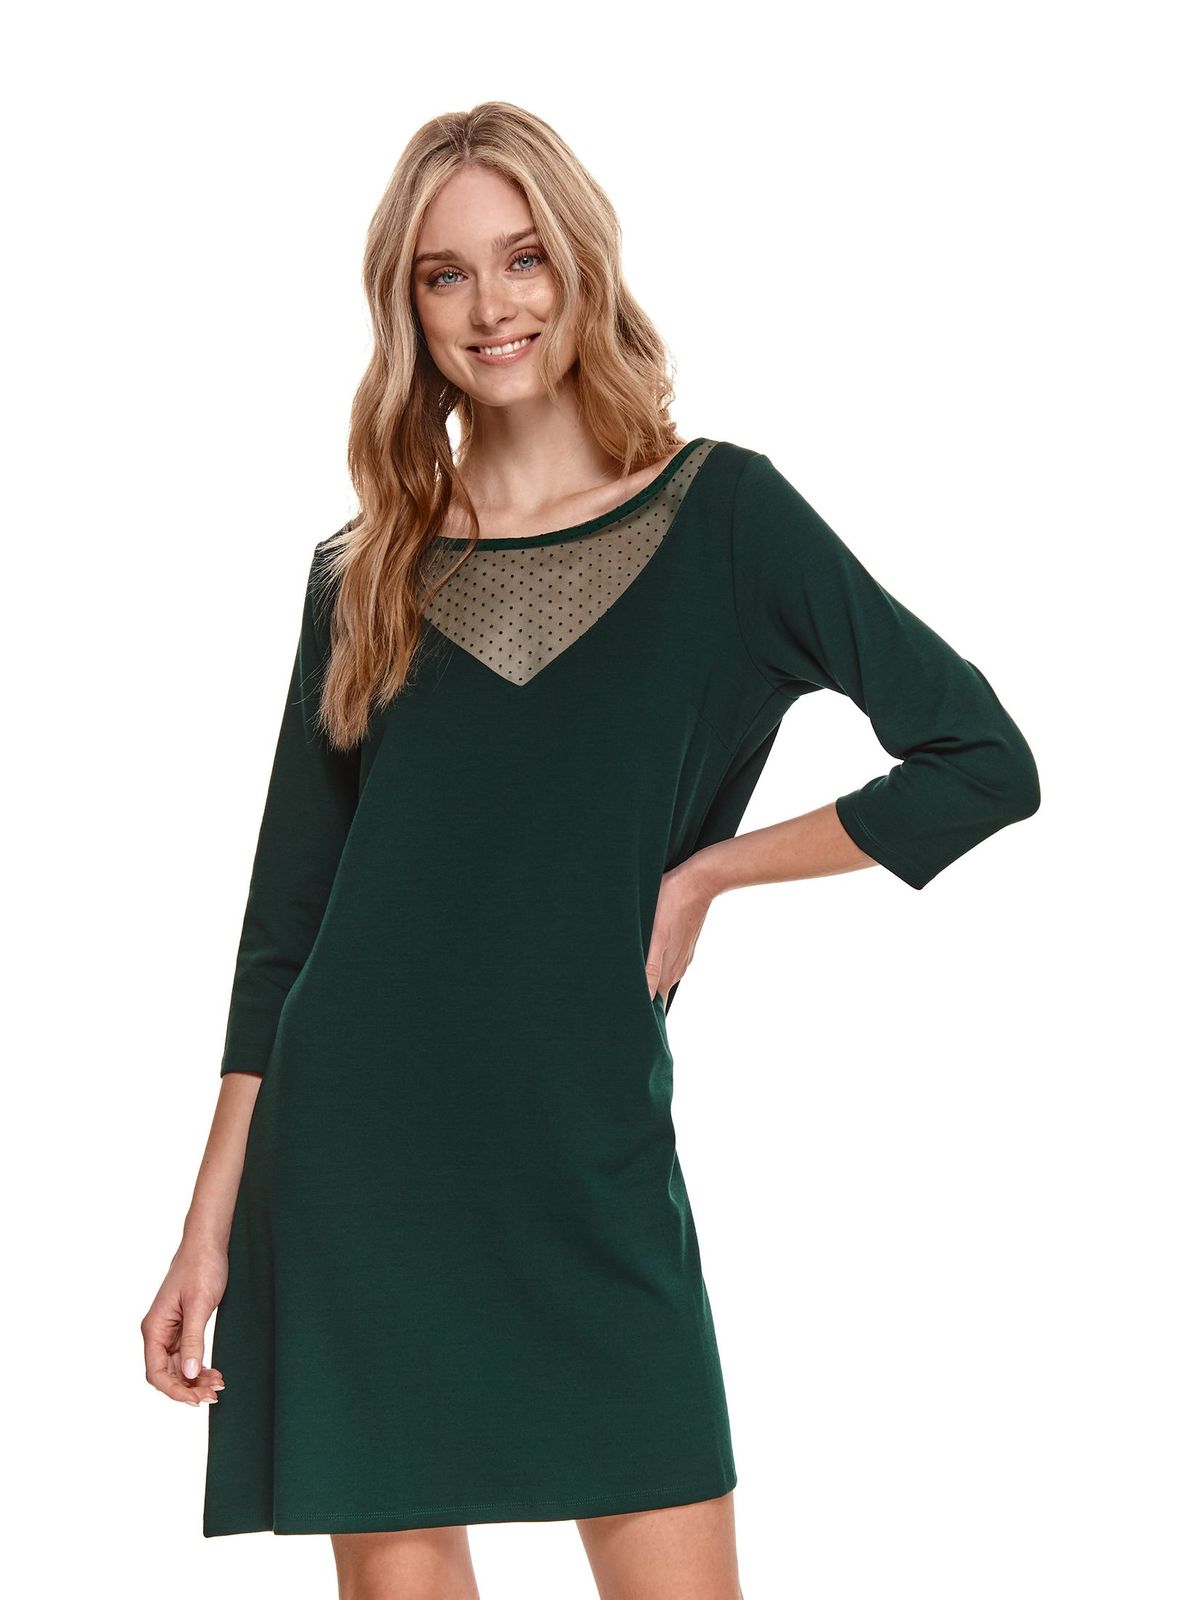 Darkgreen dress a-line plumeti